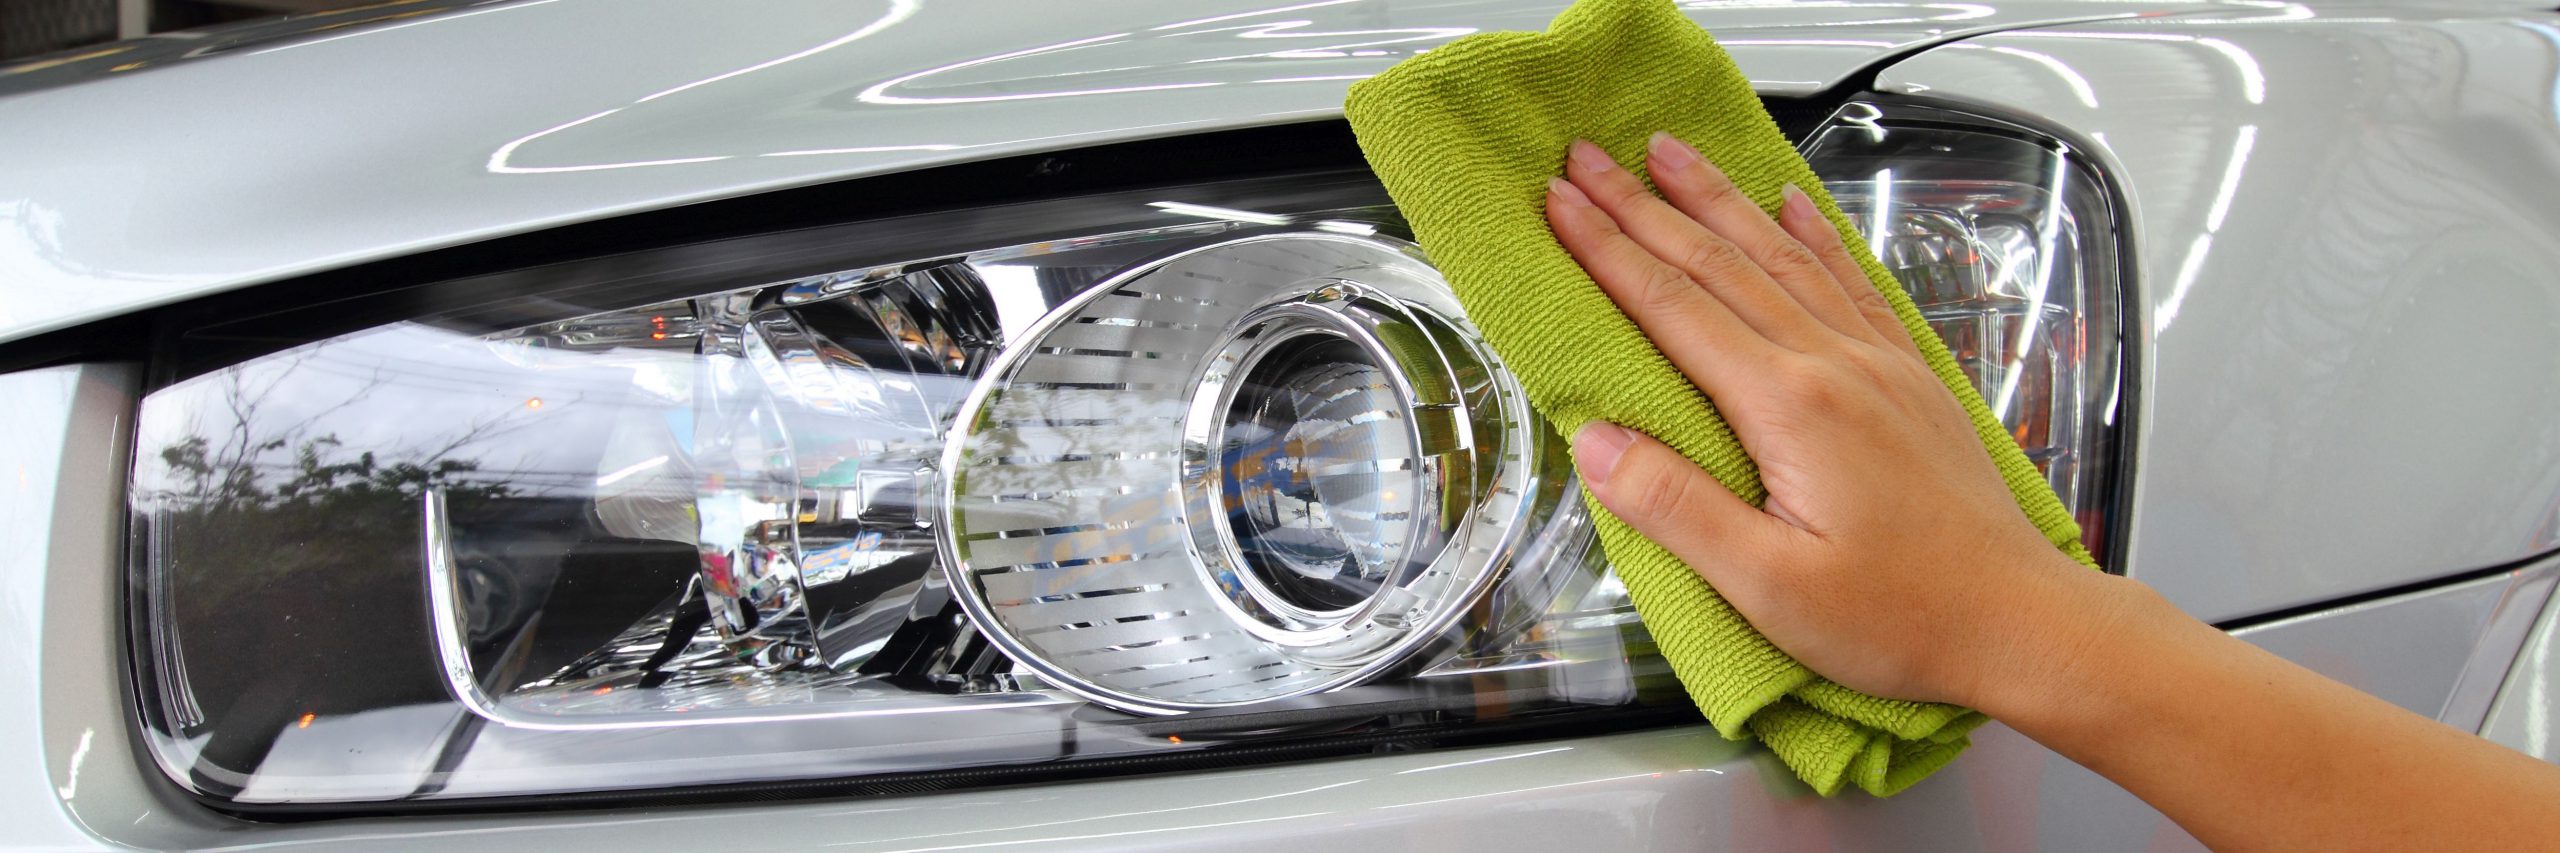 Coches: Truco casero para pulir los faros del coche con pasta de dientes